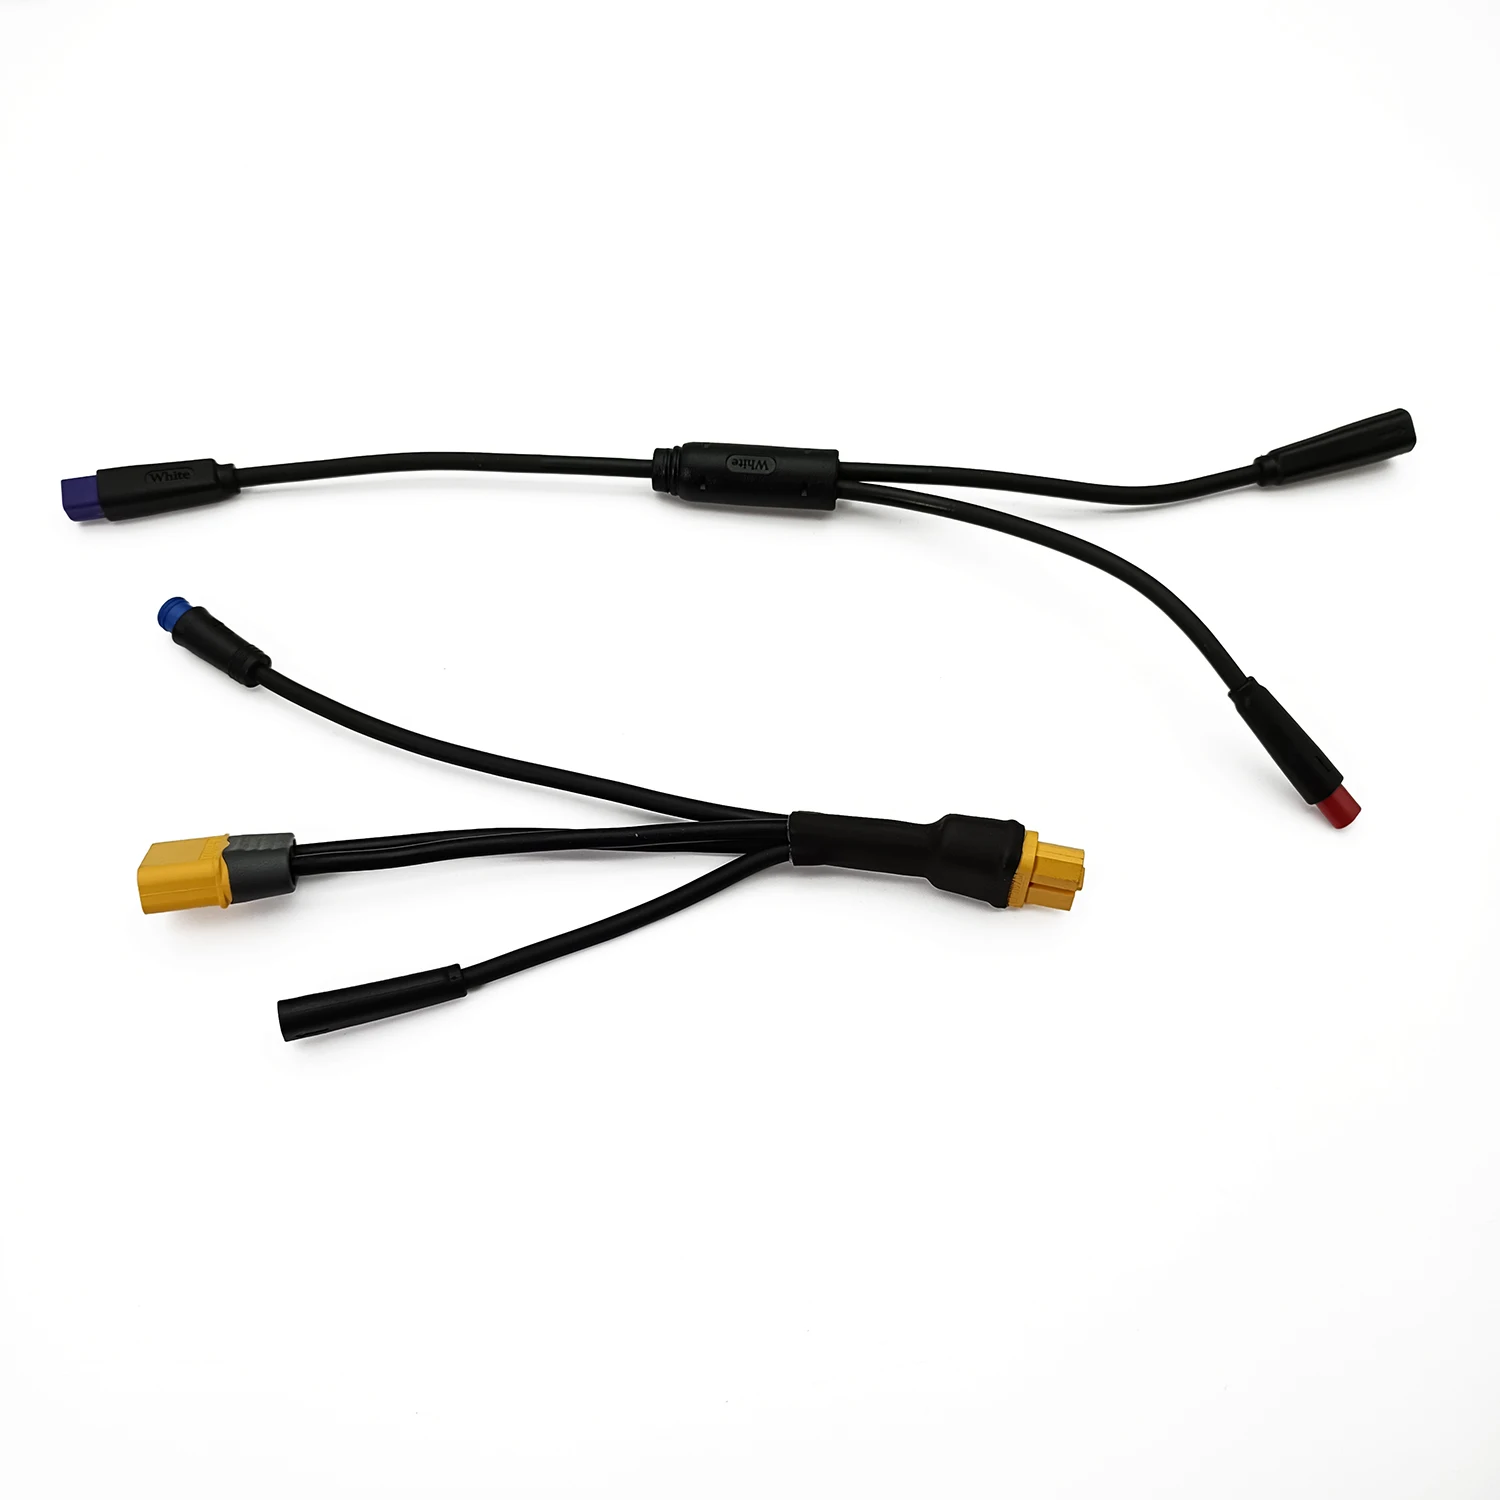 Применимо-к-набору-водонепроницаемых-ламп-ebke-для-конверсионного-кабеля-bbs-01-02-hd-серии-bafang-m500